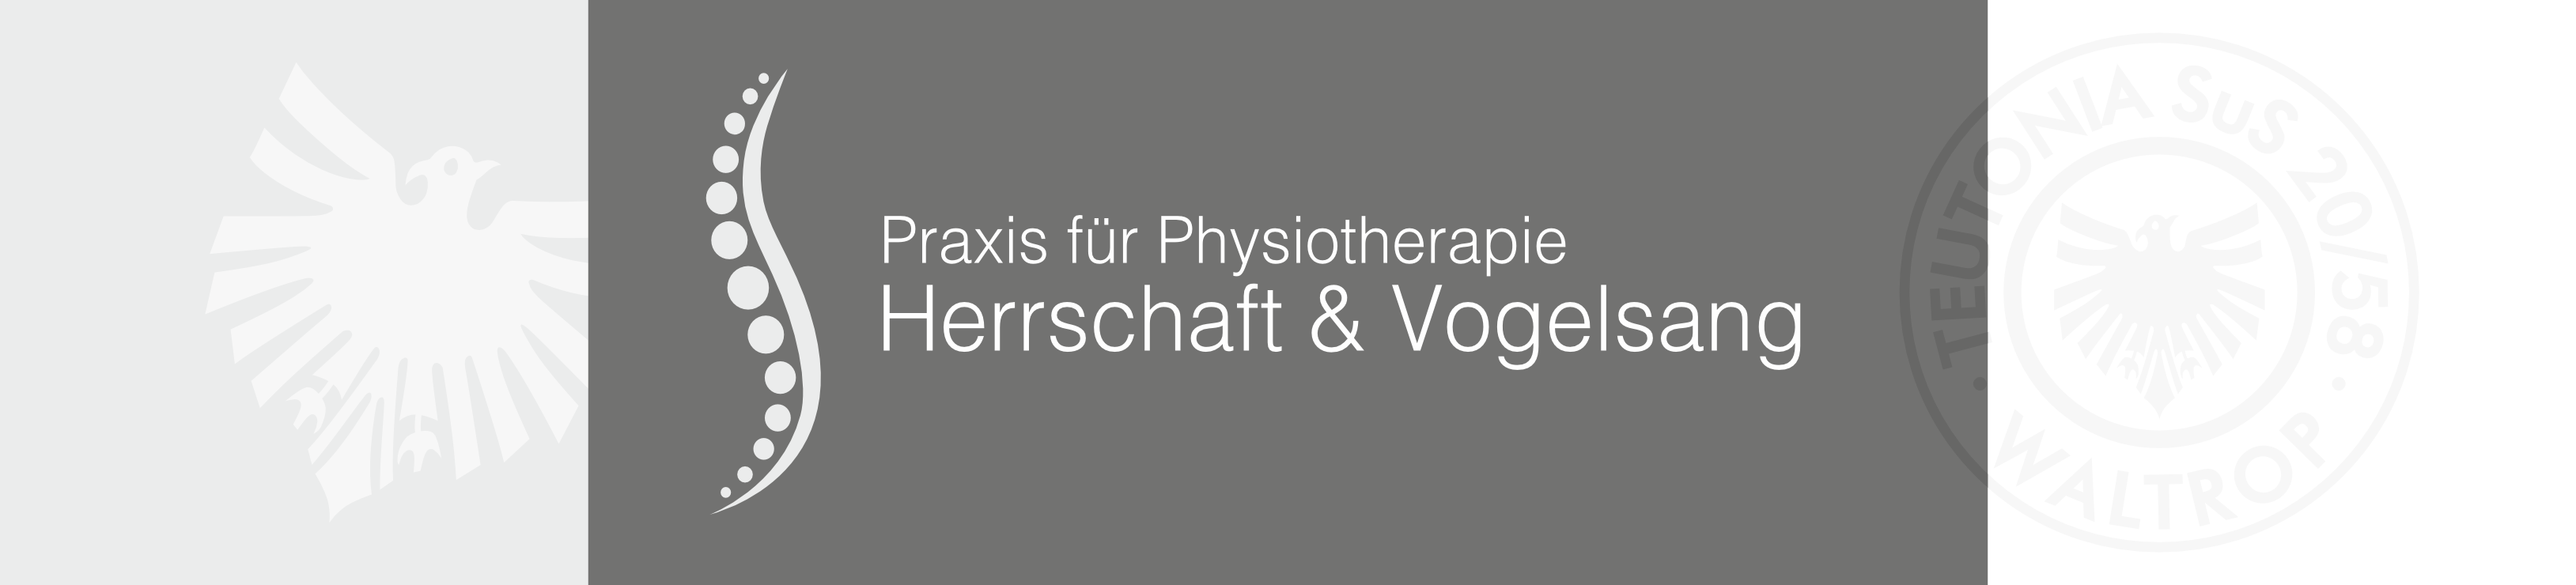 Logo der Praxis für Physiotherapie Herrschaft & Vogelsang